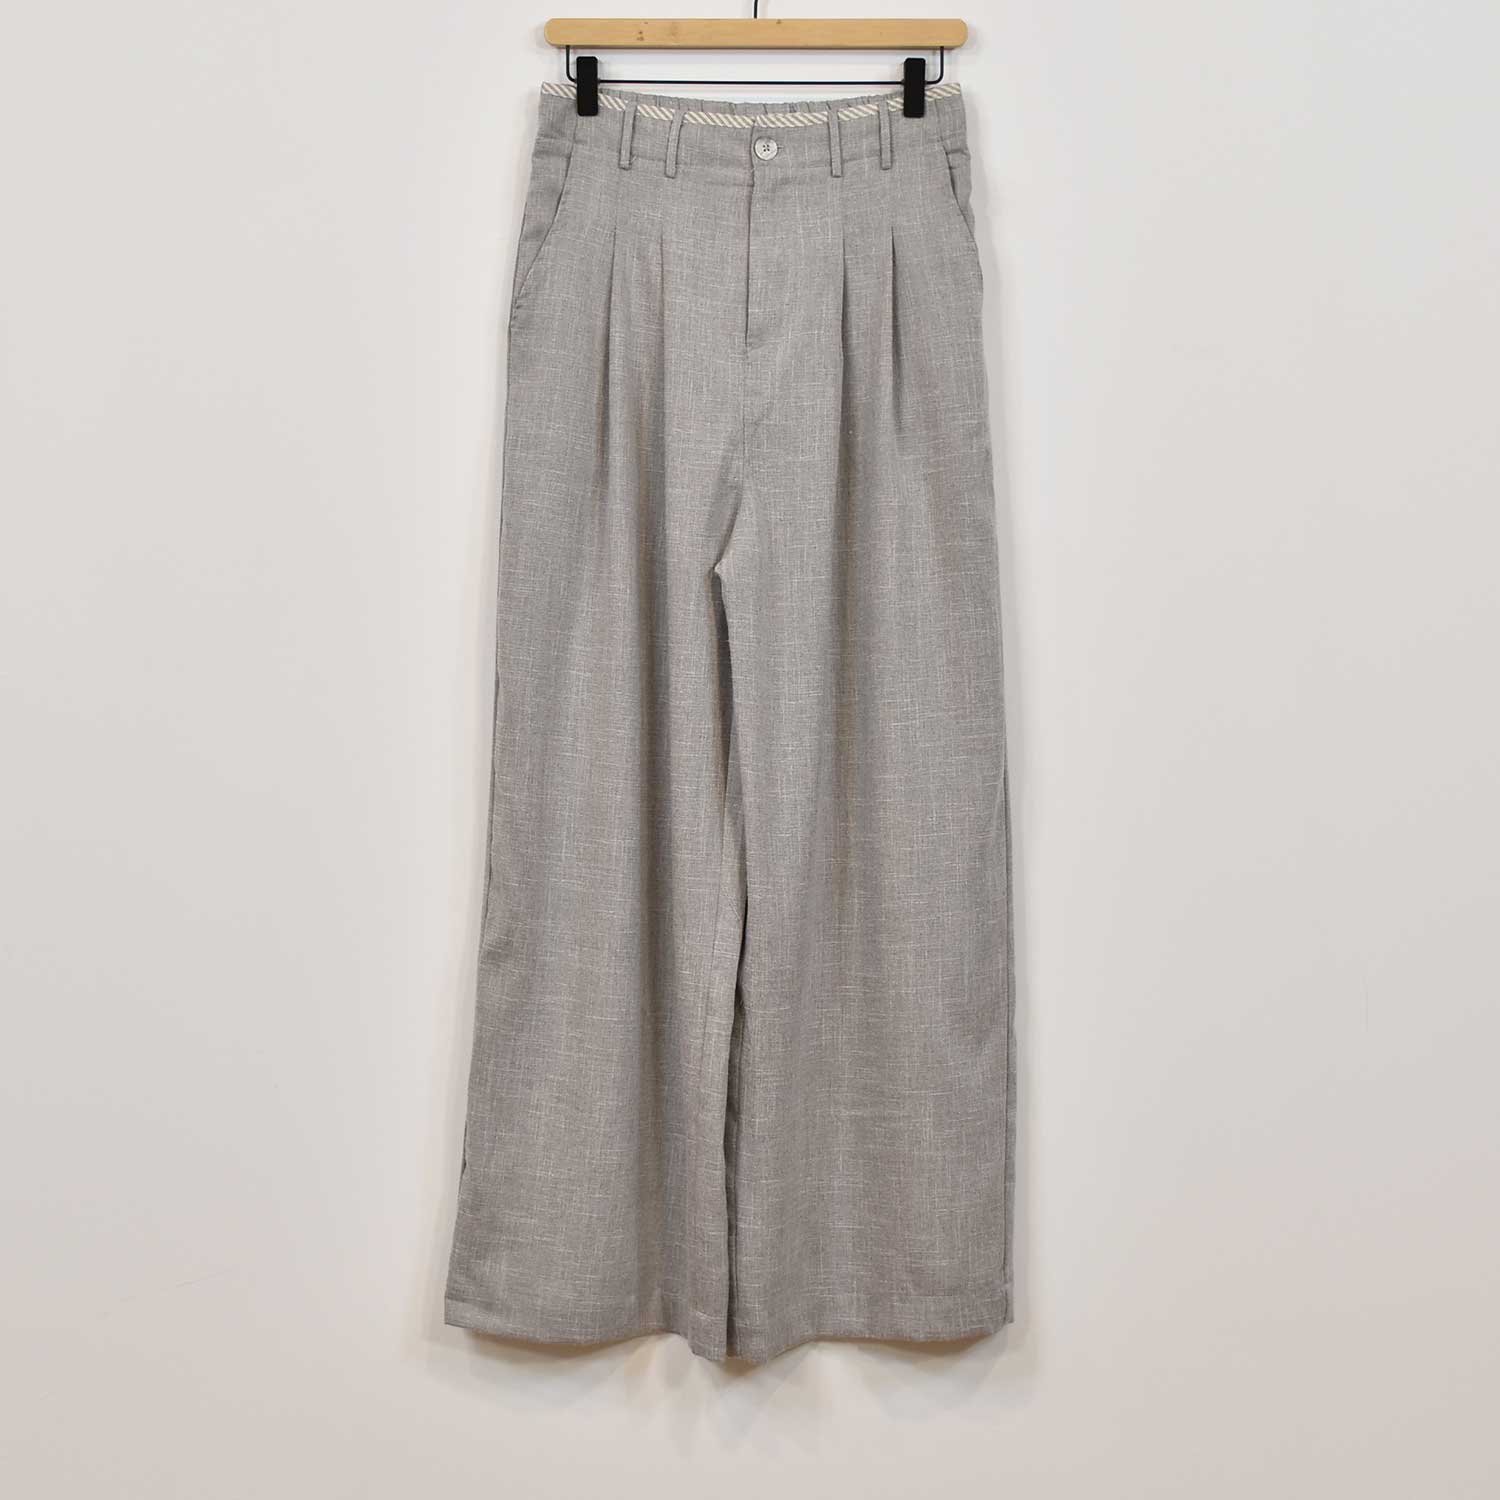 Pantalón sastre gris